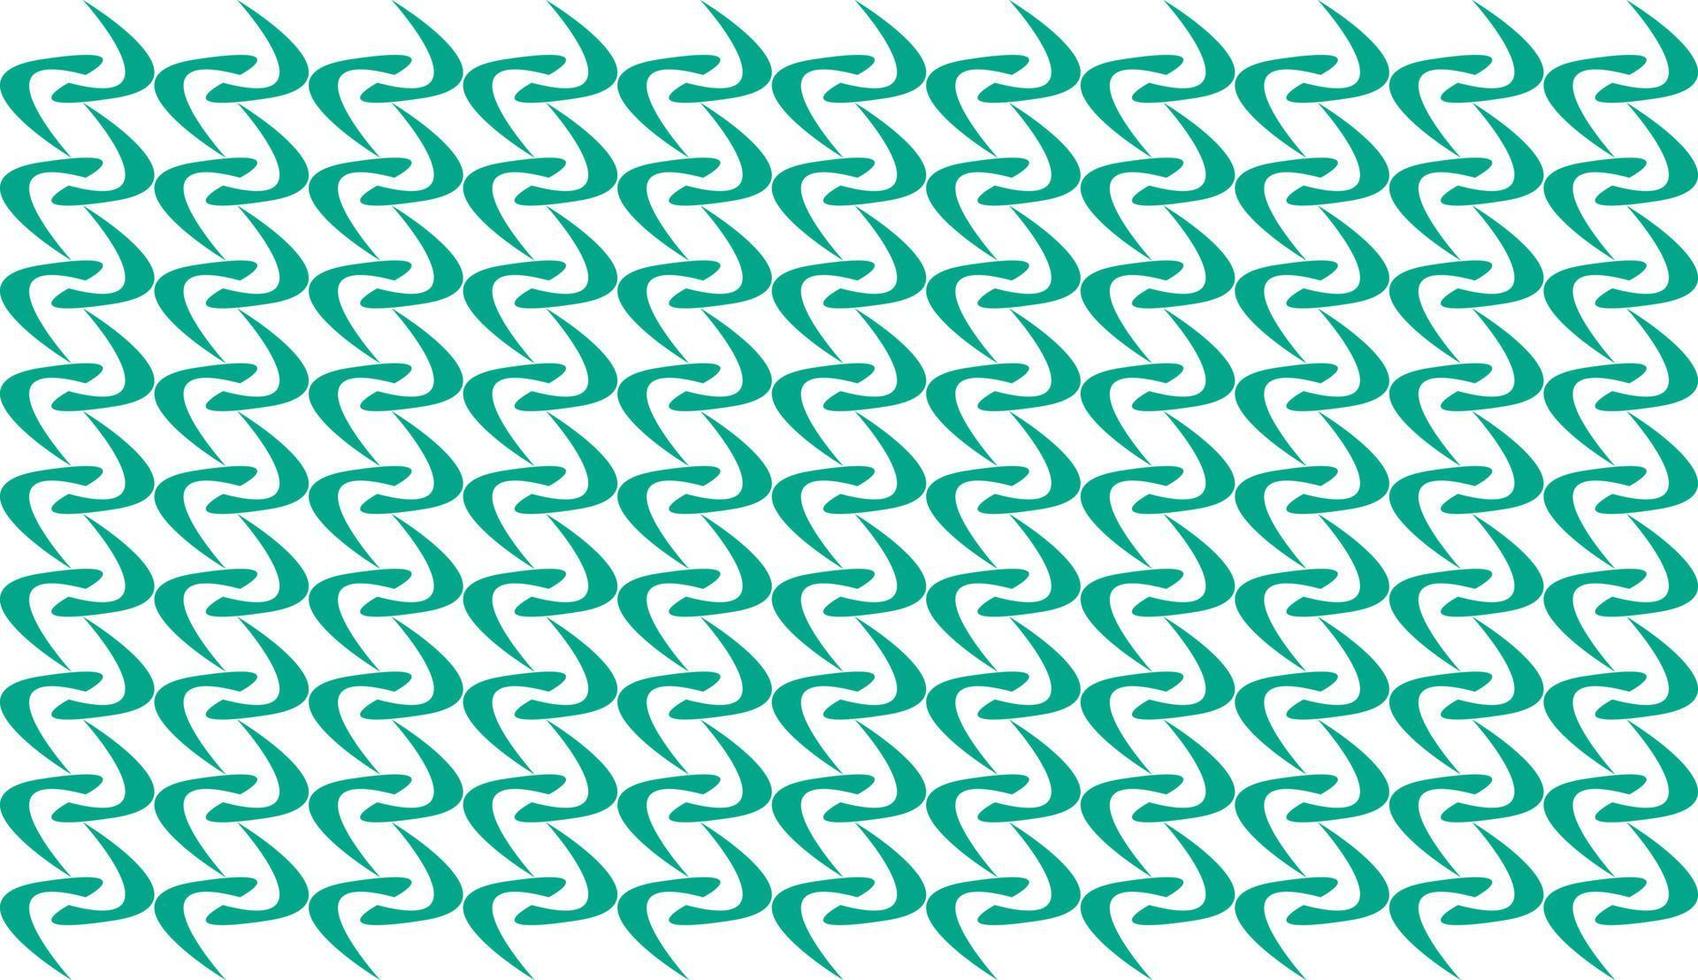 grönt kedjemönster. upprepade motiv. minimalistisk mönsterdesign. kan användas för affischer, broschyrer, vykort och andra utskriftsbehov. vektor illustration